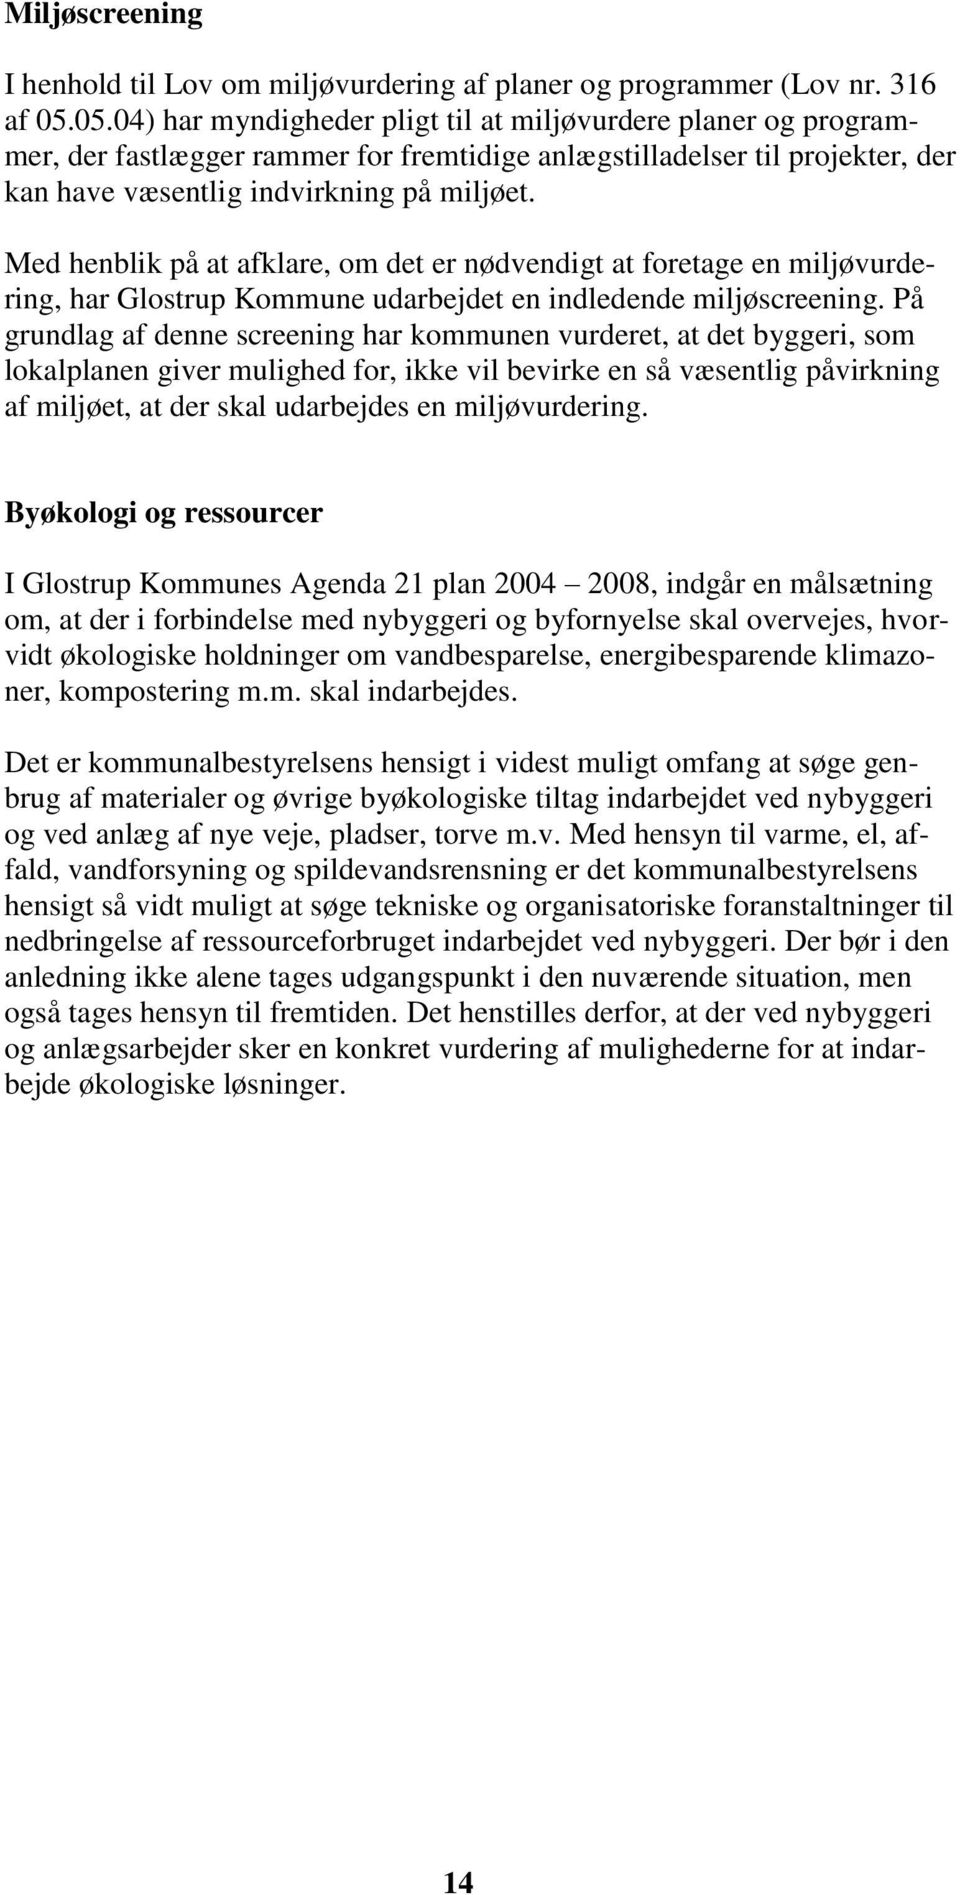 Med henblik på at afklare, om det er nødvendigt at foretage en miljøvurdering, har Glostrup Kommune udarbejdet en indledende miljøscreening.